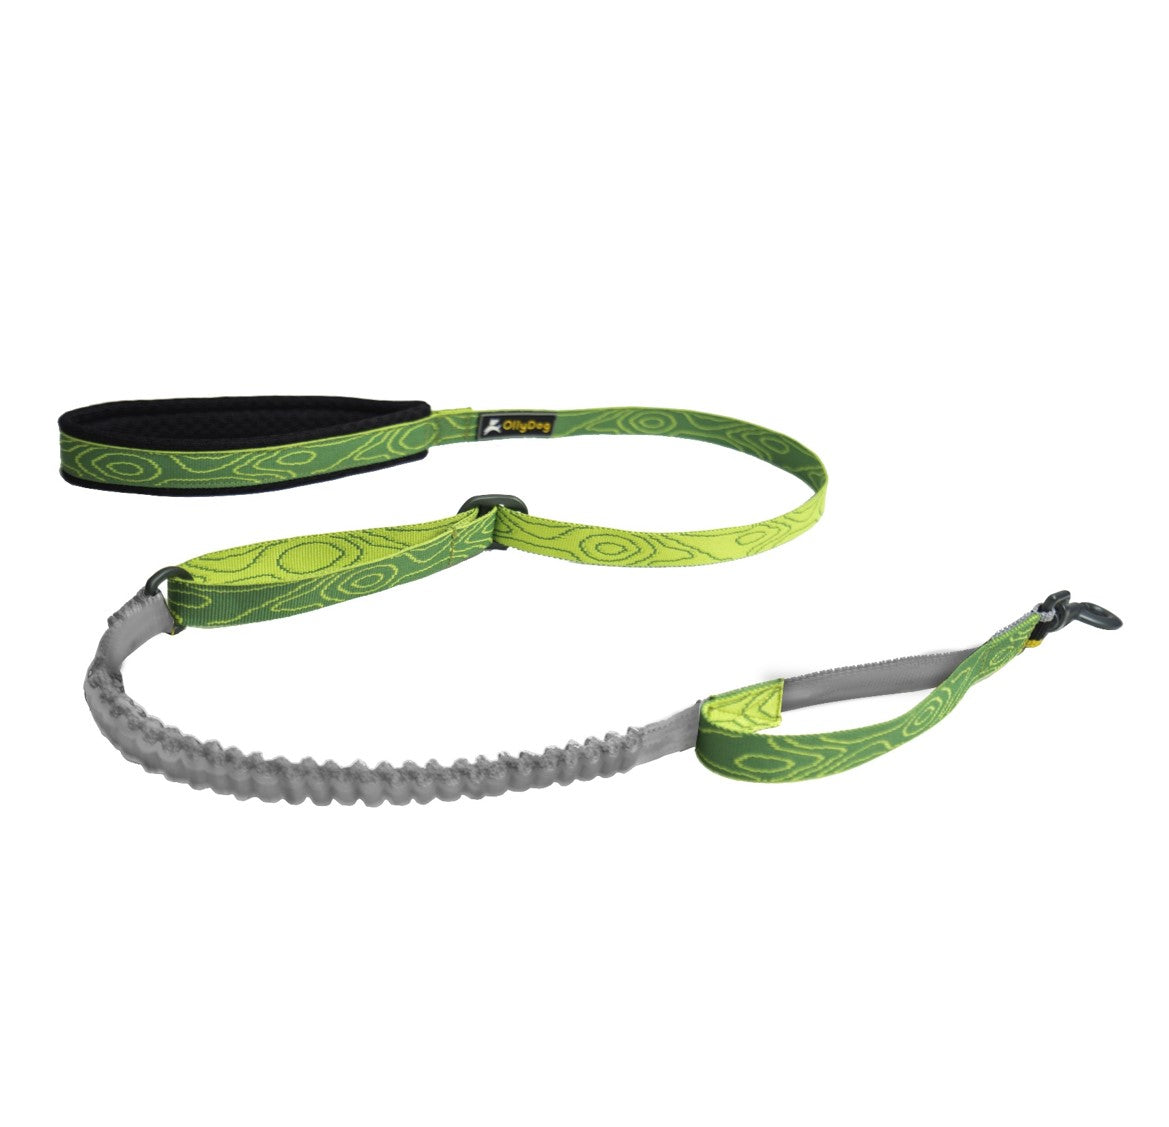 Flagstaff Adjustable Spring Leash | Adjustable Bungee Leash